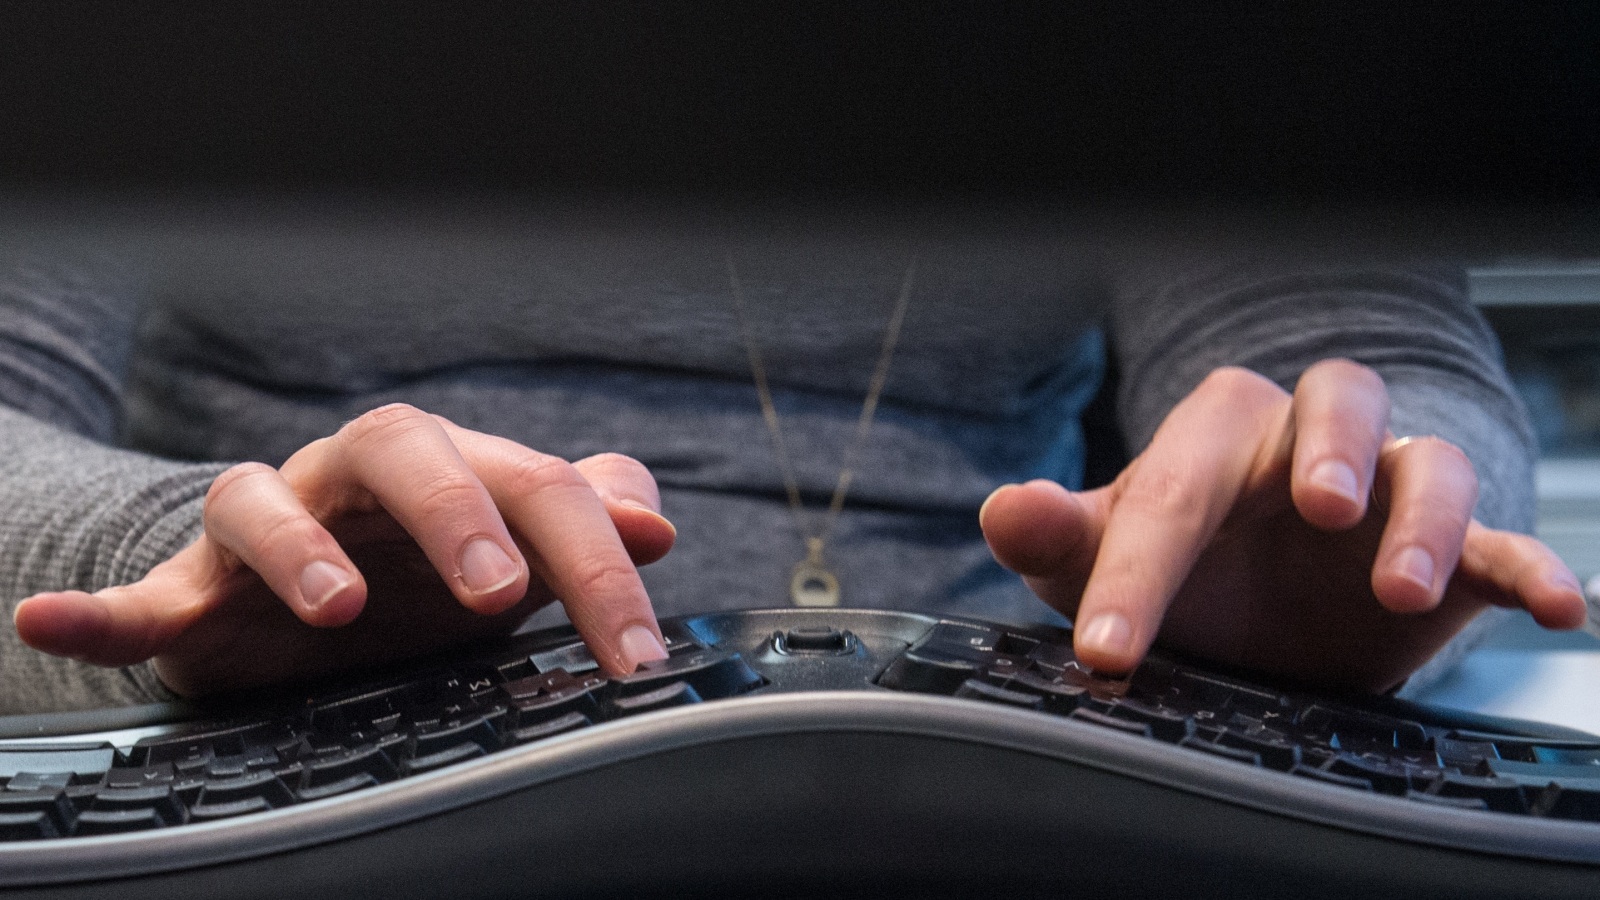 ‪لوحة المفاتيح المريحة تجنب المستخدم آلام الرسغ عند الكتابة فترات طويلة‬  (الألمانية)